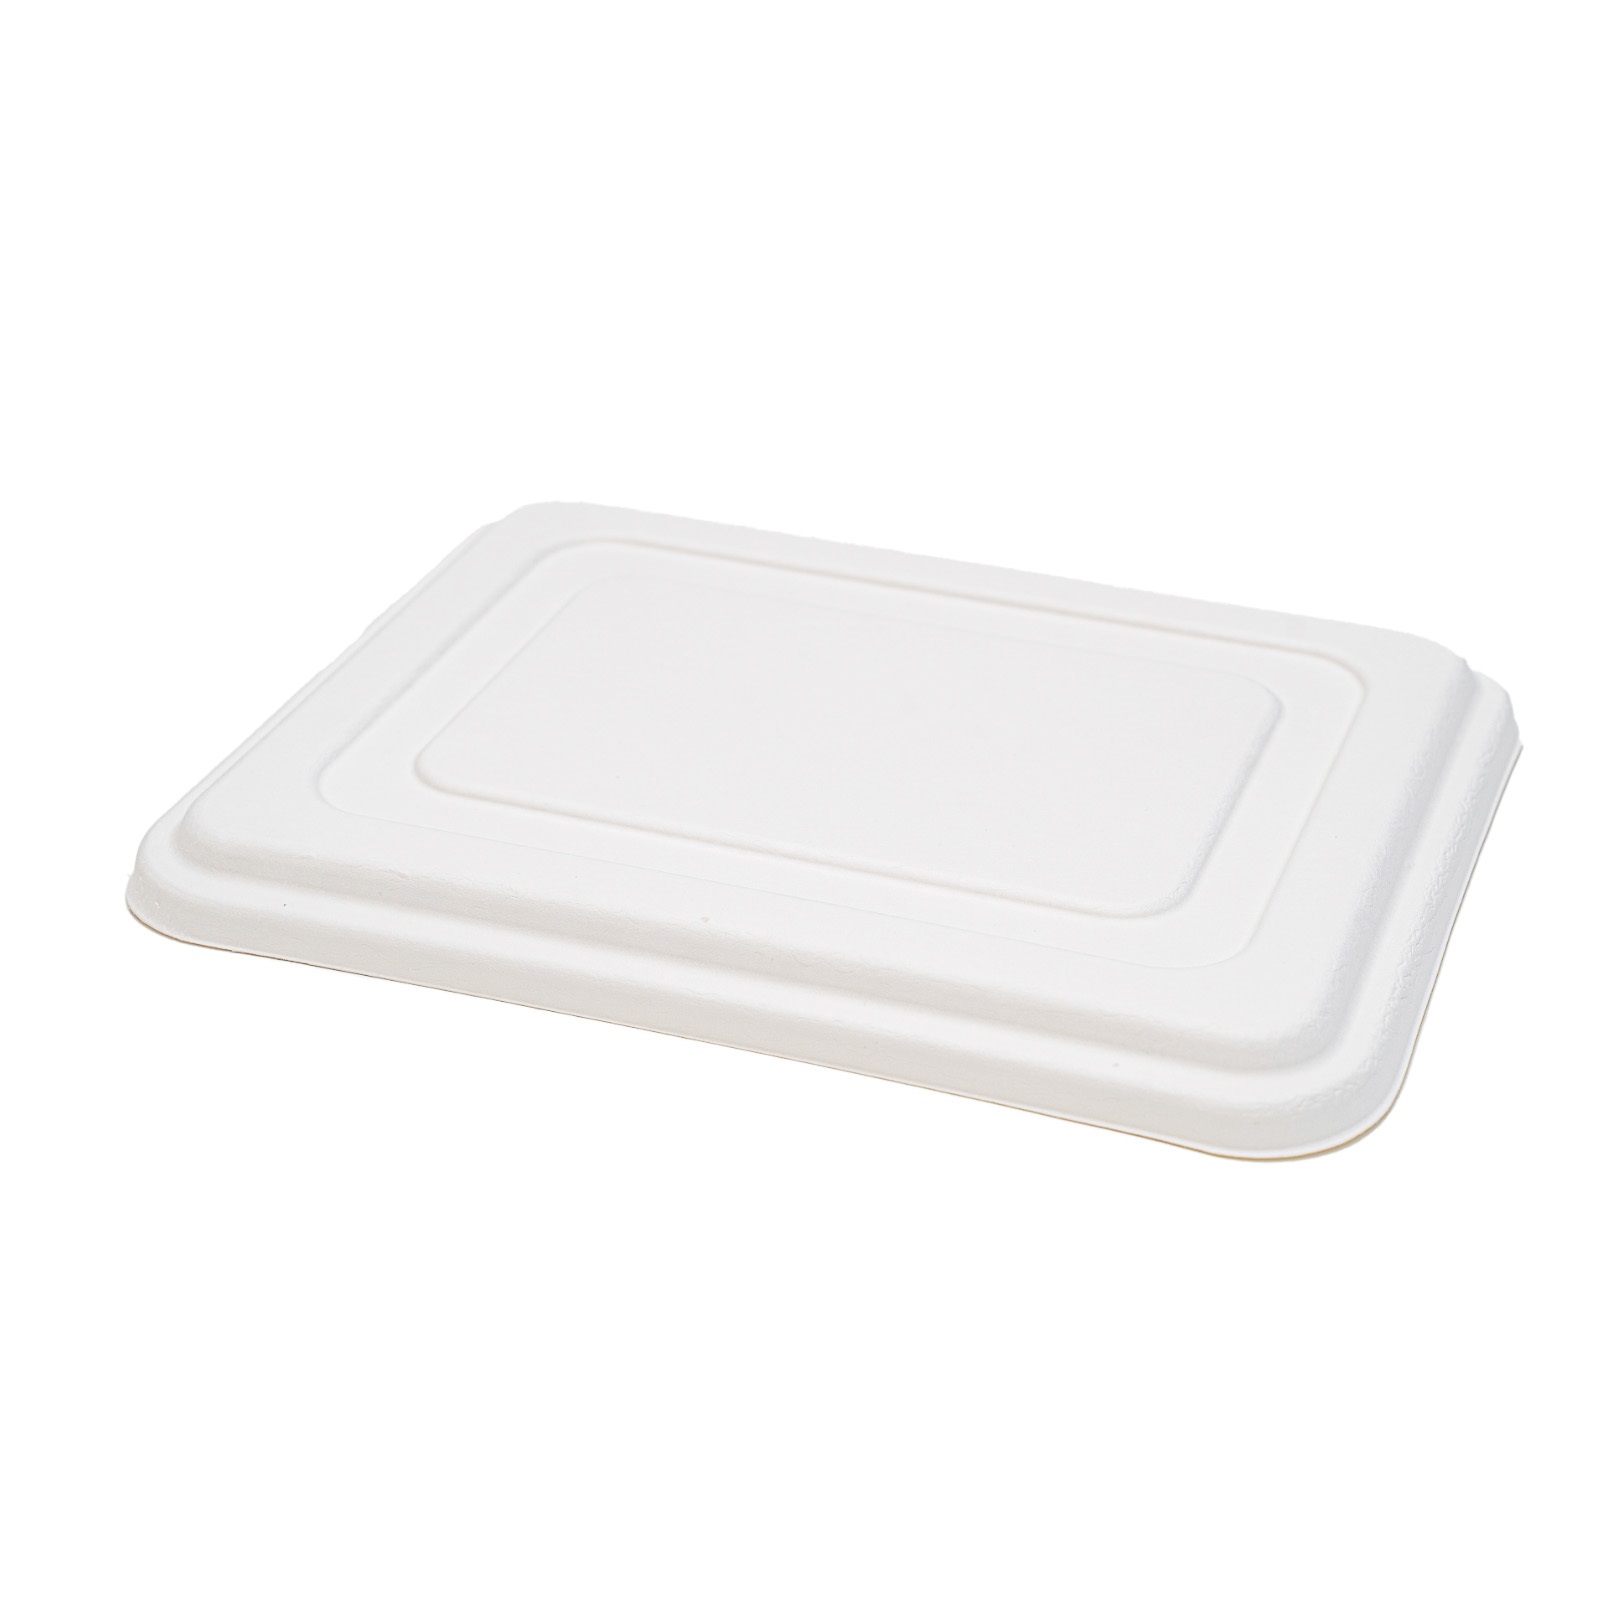 Fibre Lid for Fiber Bento Box, 5-Compartment 11.25 x 8.75 x 0.75"- 200/Case